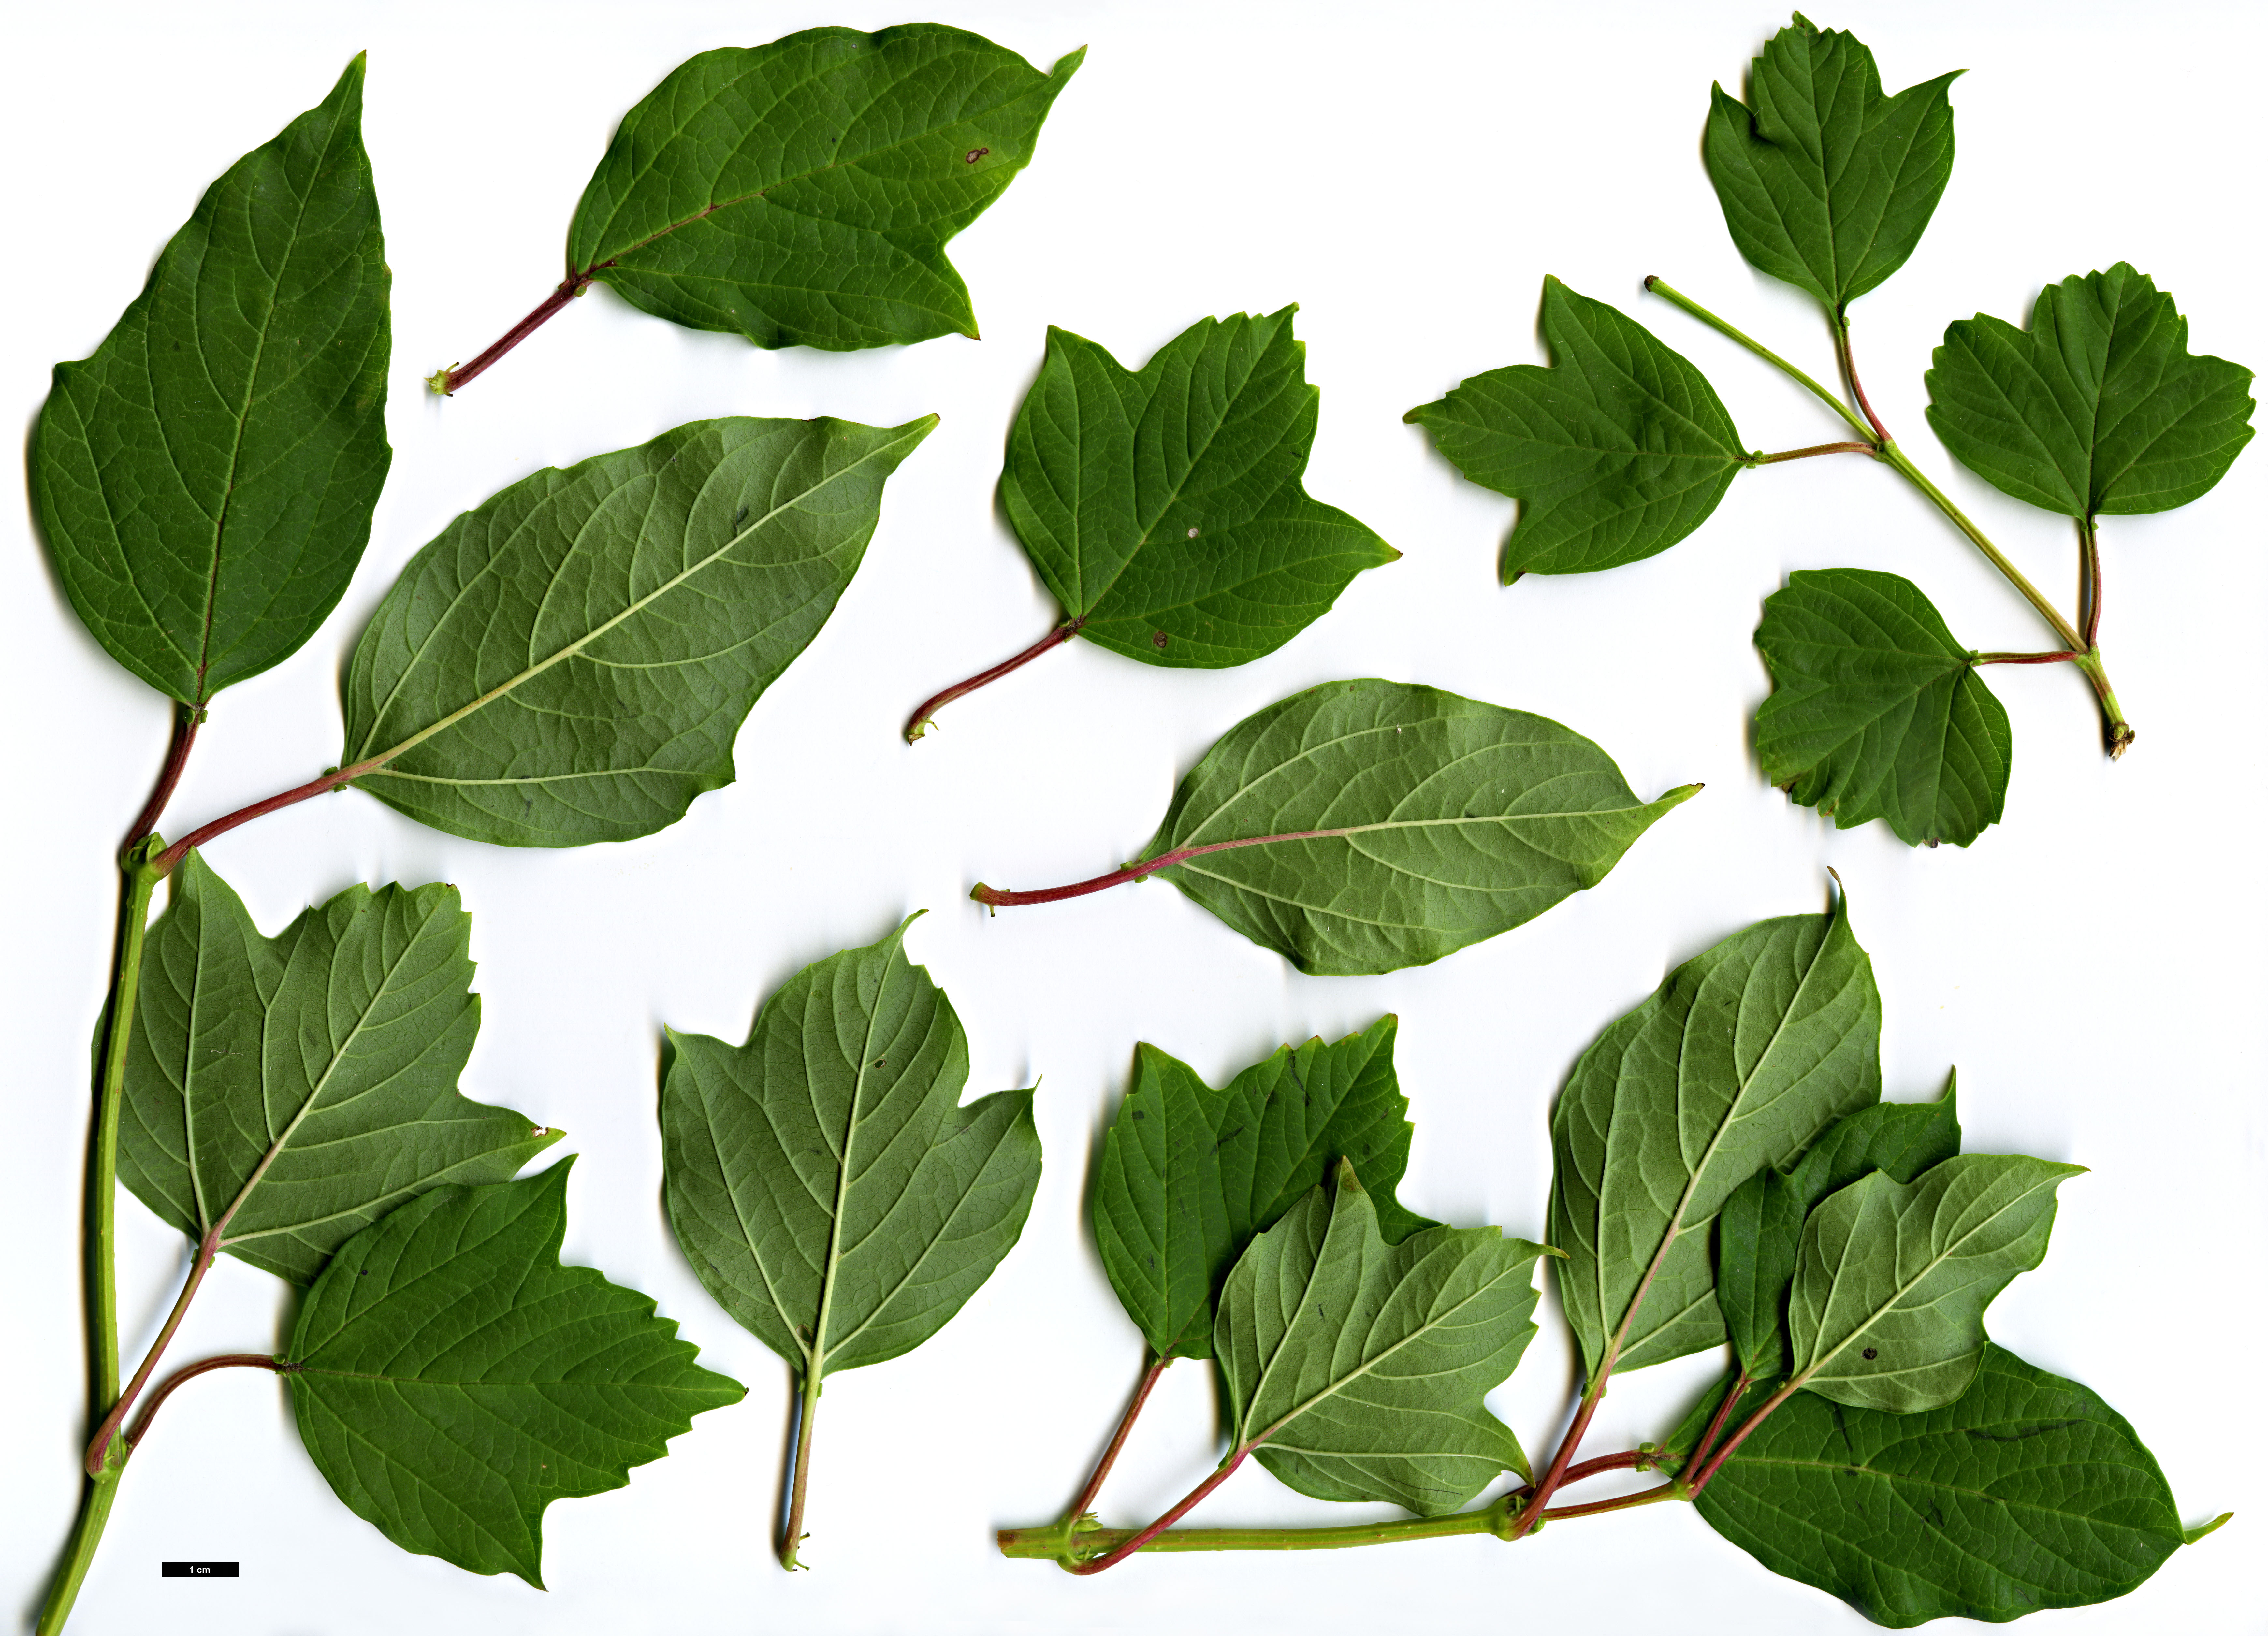 High resolution image: Family: Adoxaceae - Genus: Viburnum - Taxon: sargentii